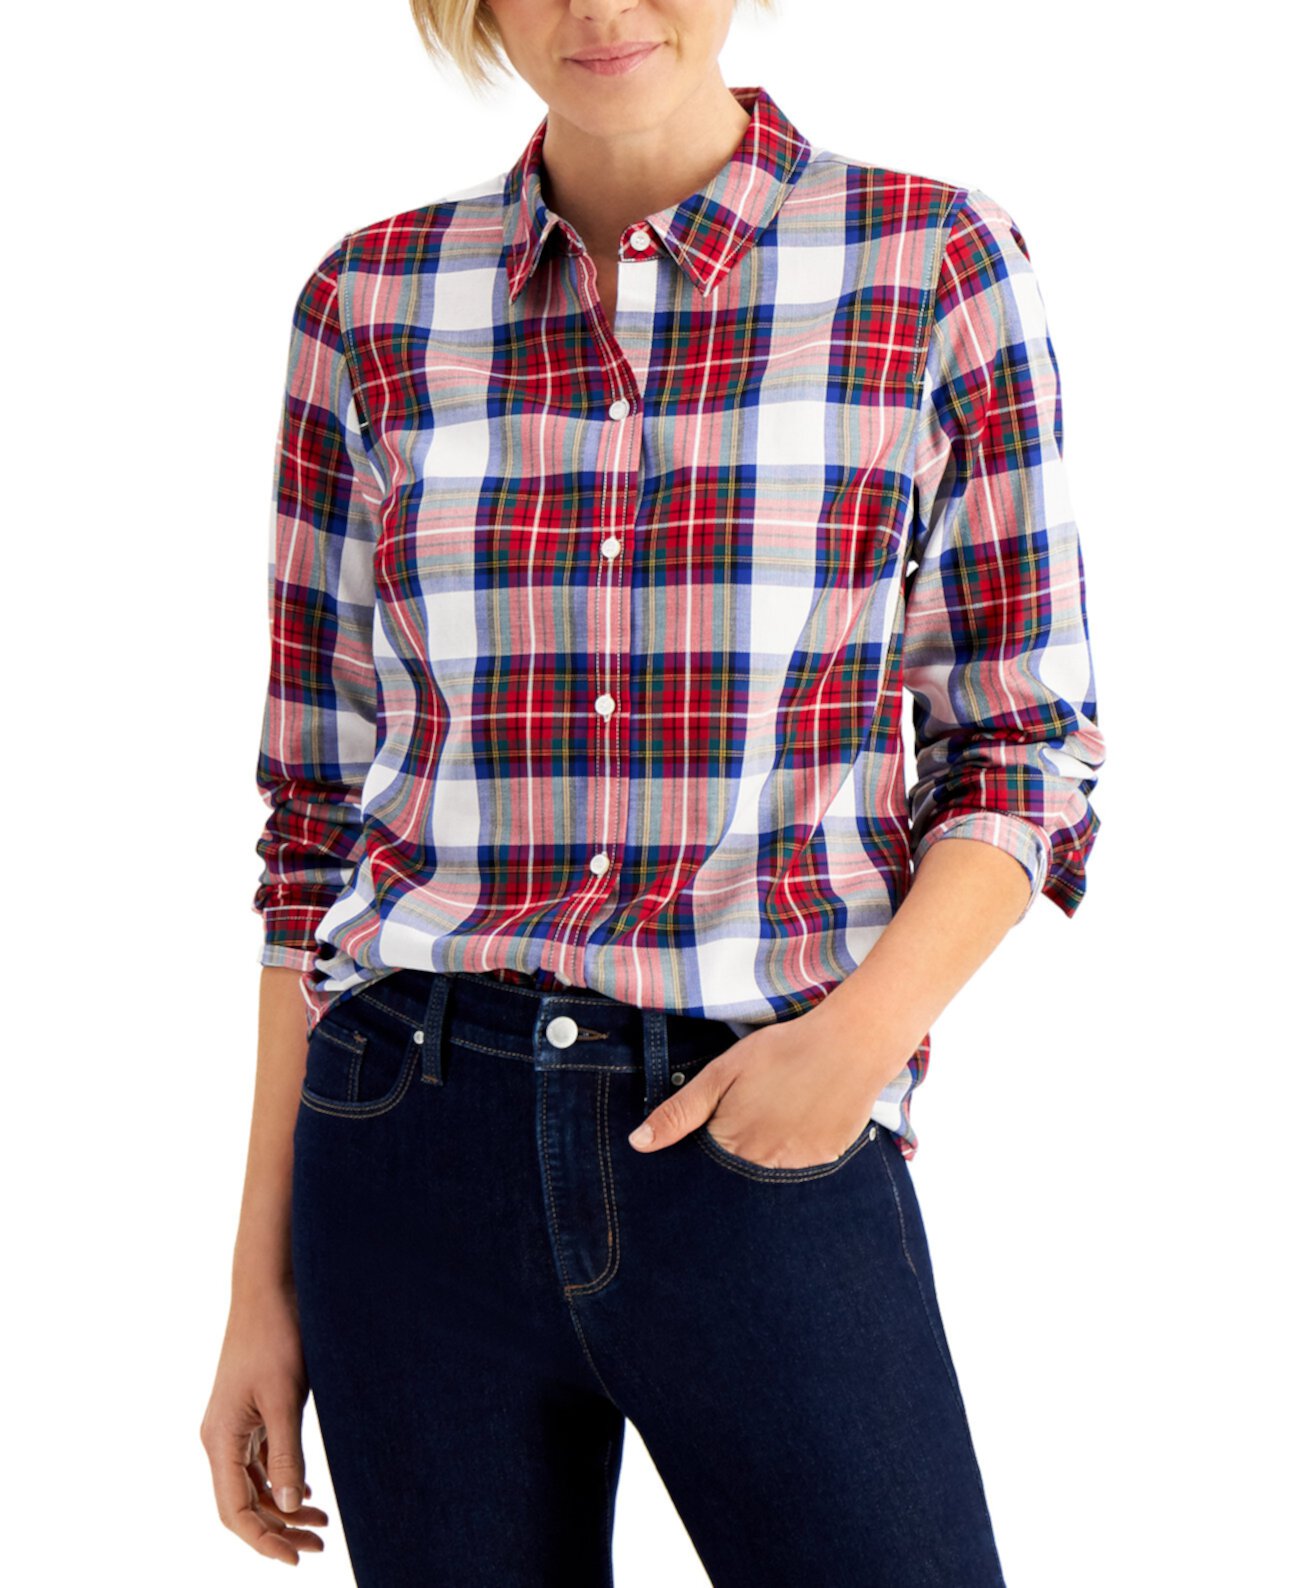 Хлопковая клетчатая рубашка, созданная для Macy's Charter Club